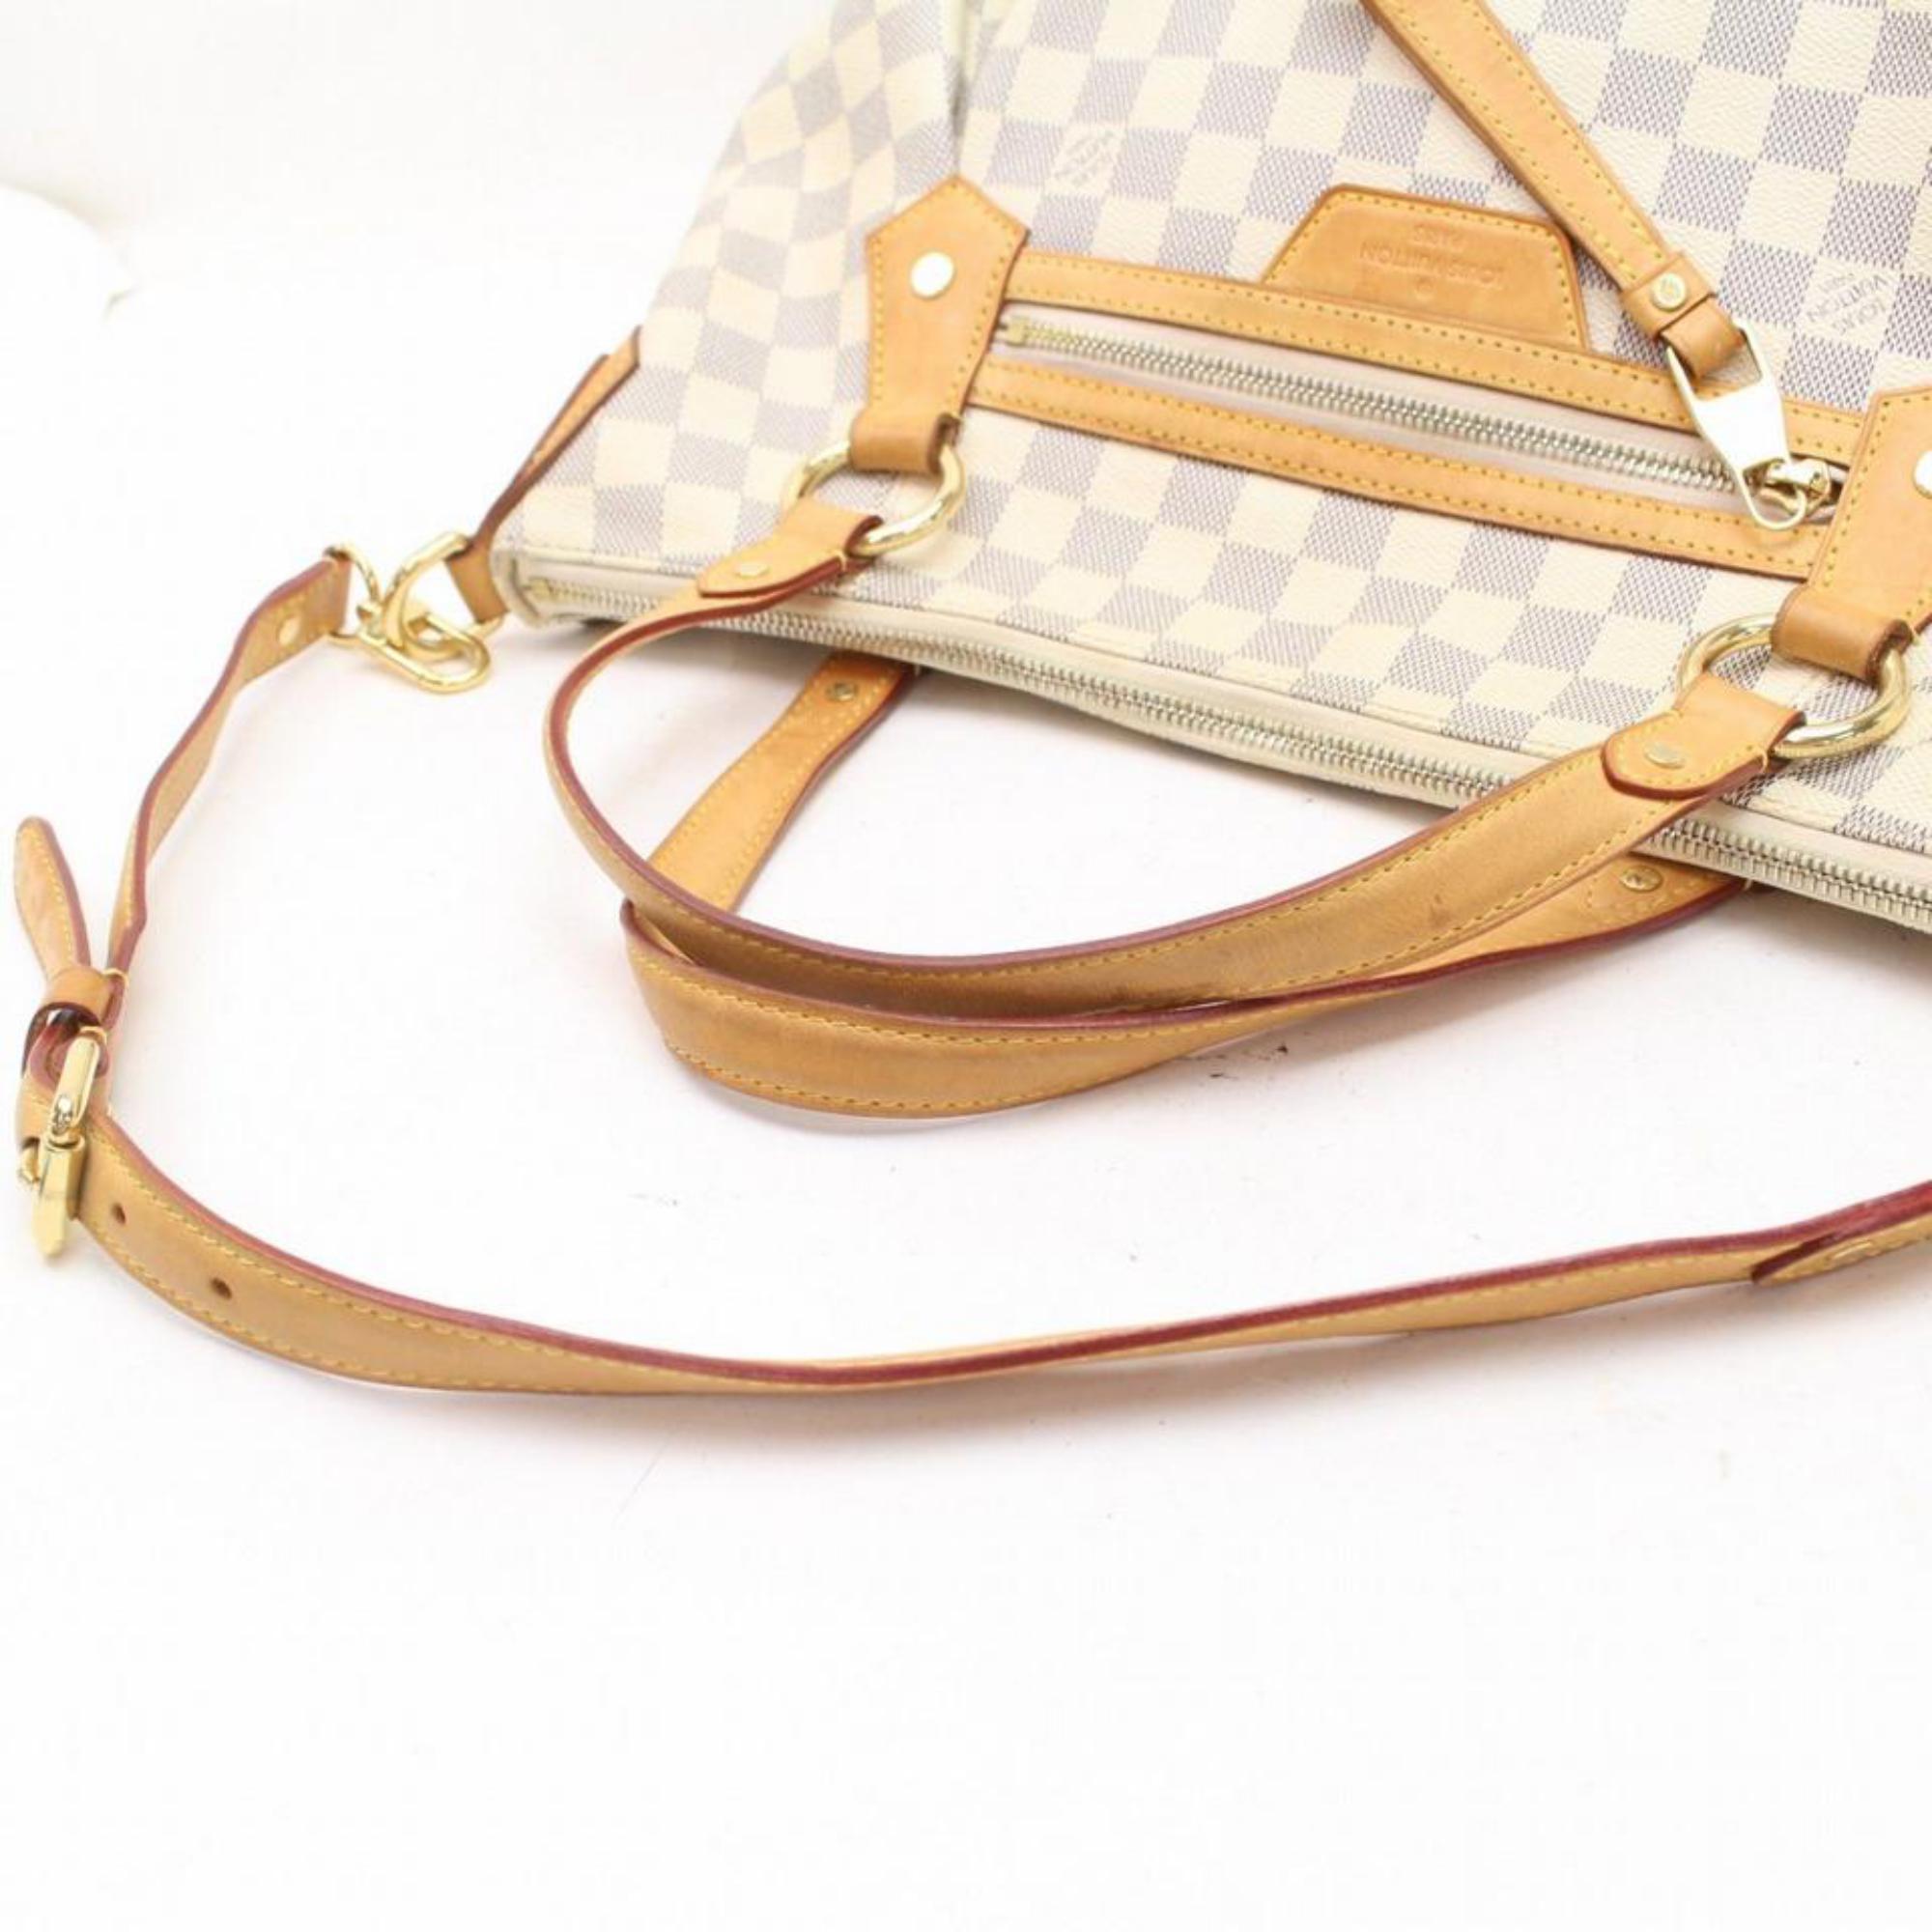 Louis Vuitton Evora Damier Azur Gm 869863 White Coated Canvas Shoulder Bag For Sale 1